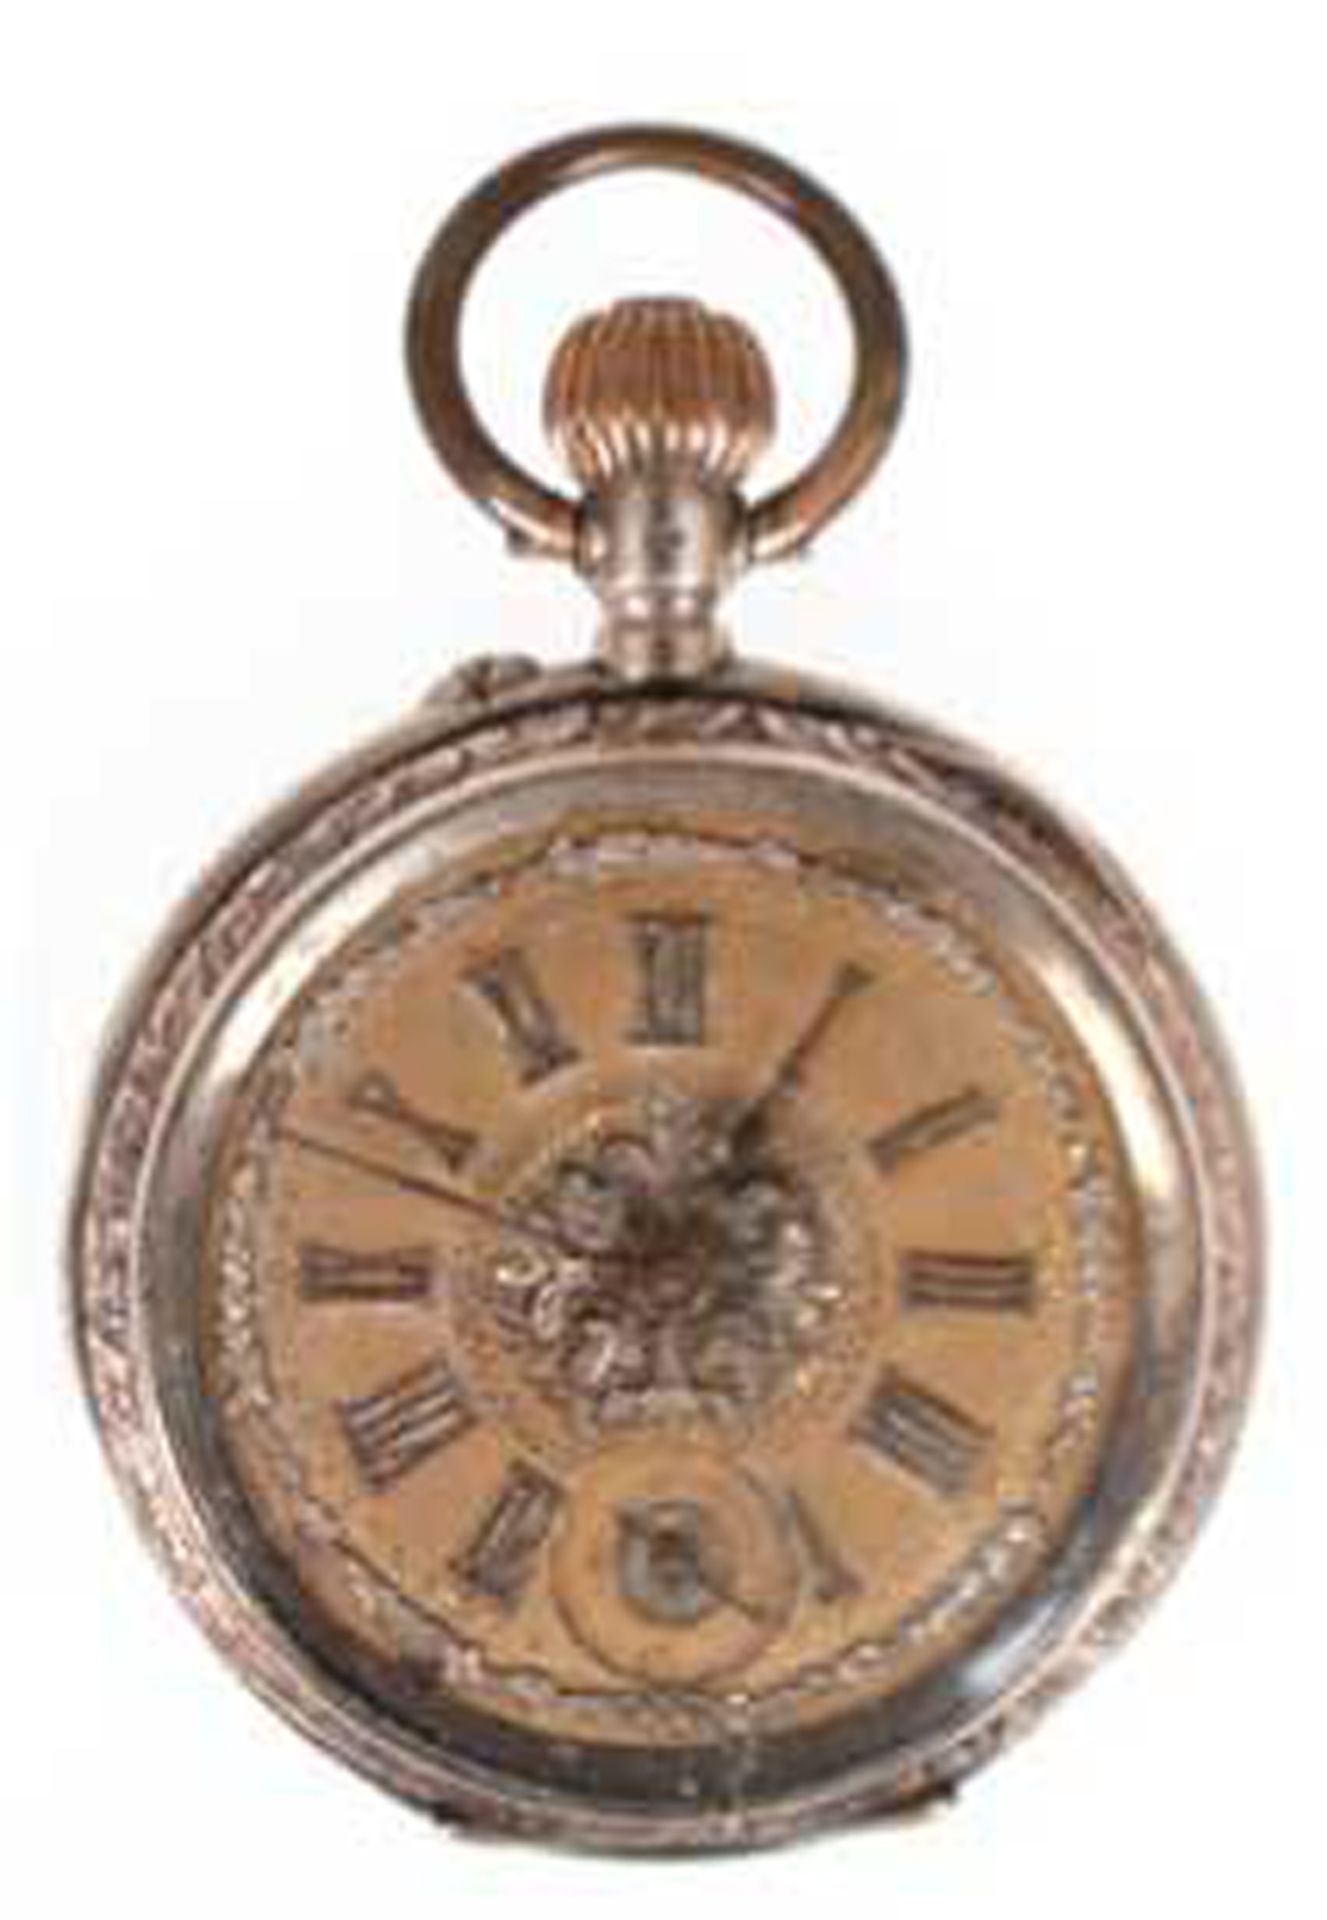 Taschenuhr, Silber, aufwendig gestaltetes Messing-Ziffernblatt mit römischen Zahlen und kleiner dez